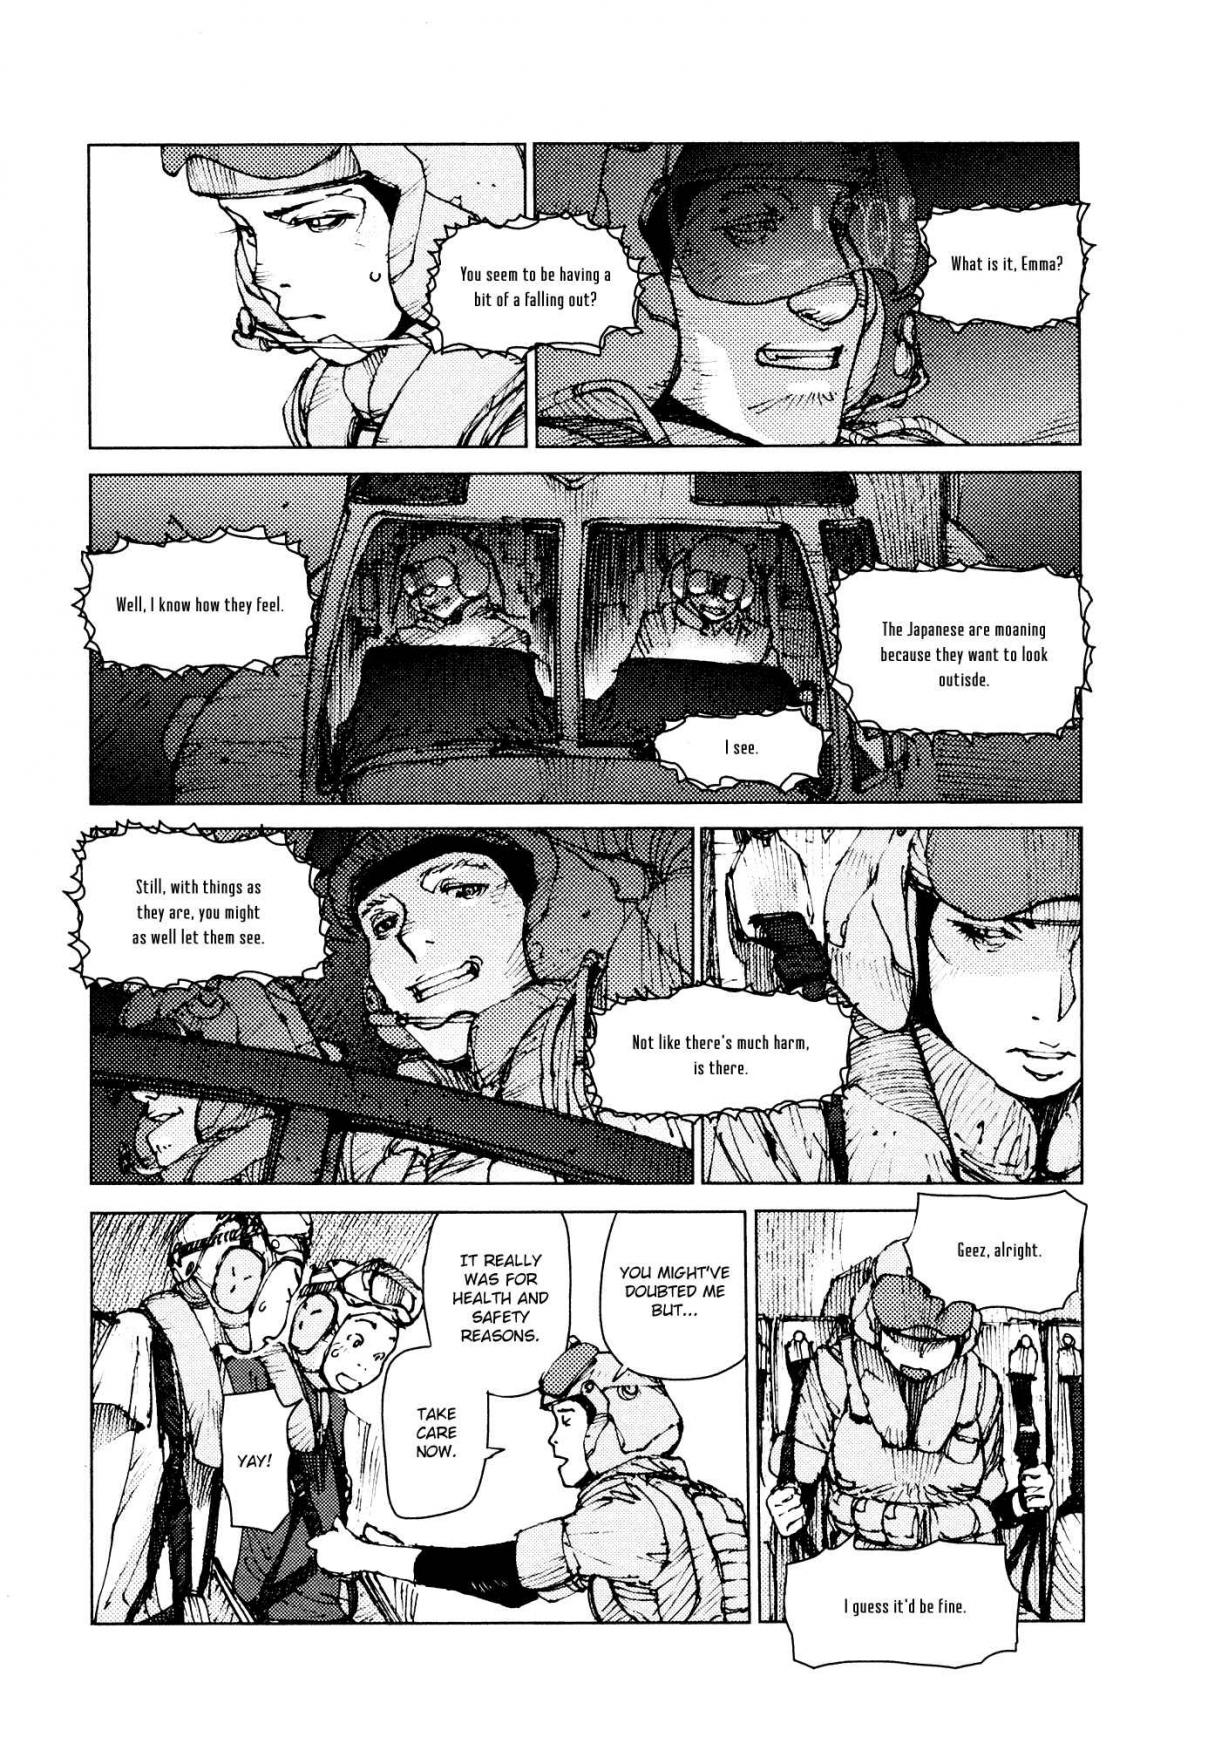 Survival: Shounen S no Kiroku Vol. 4 Ch. 65 Danger 65